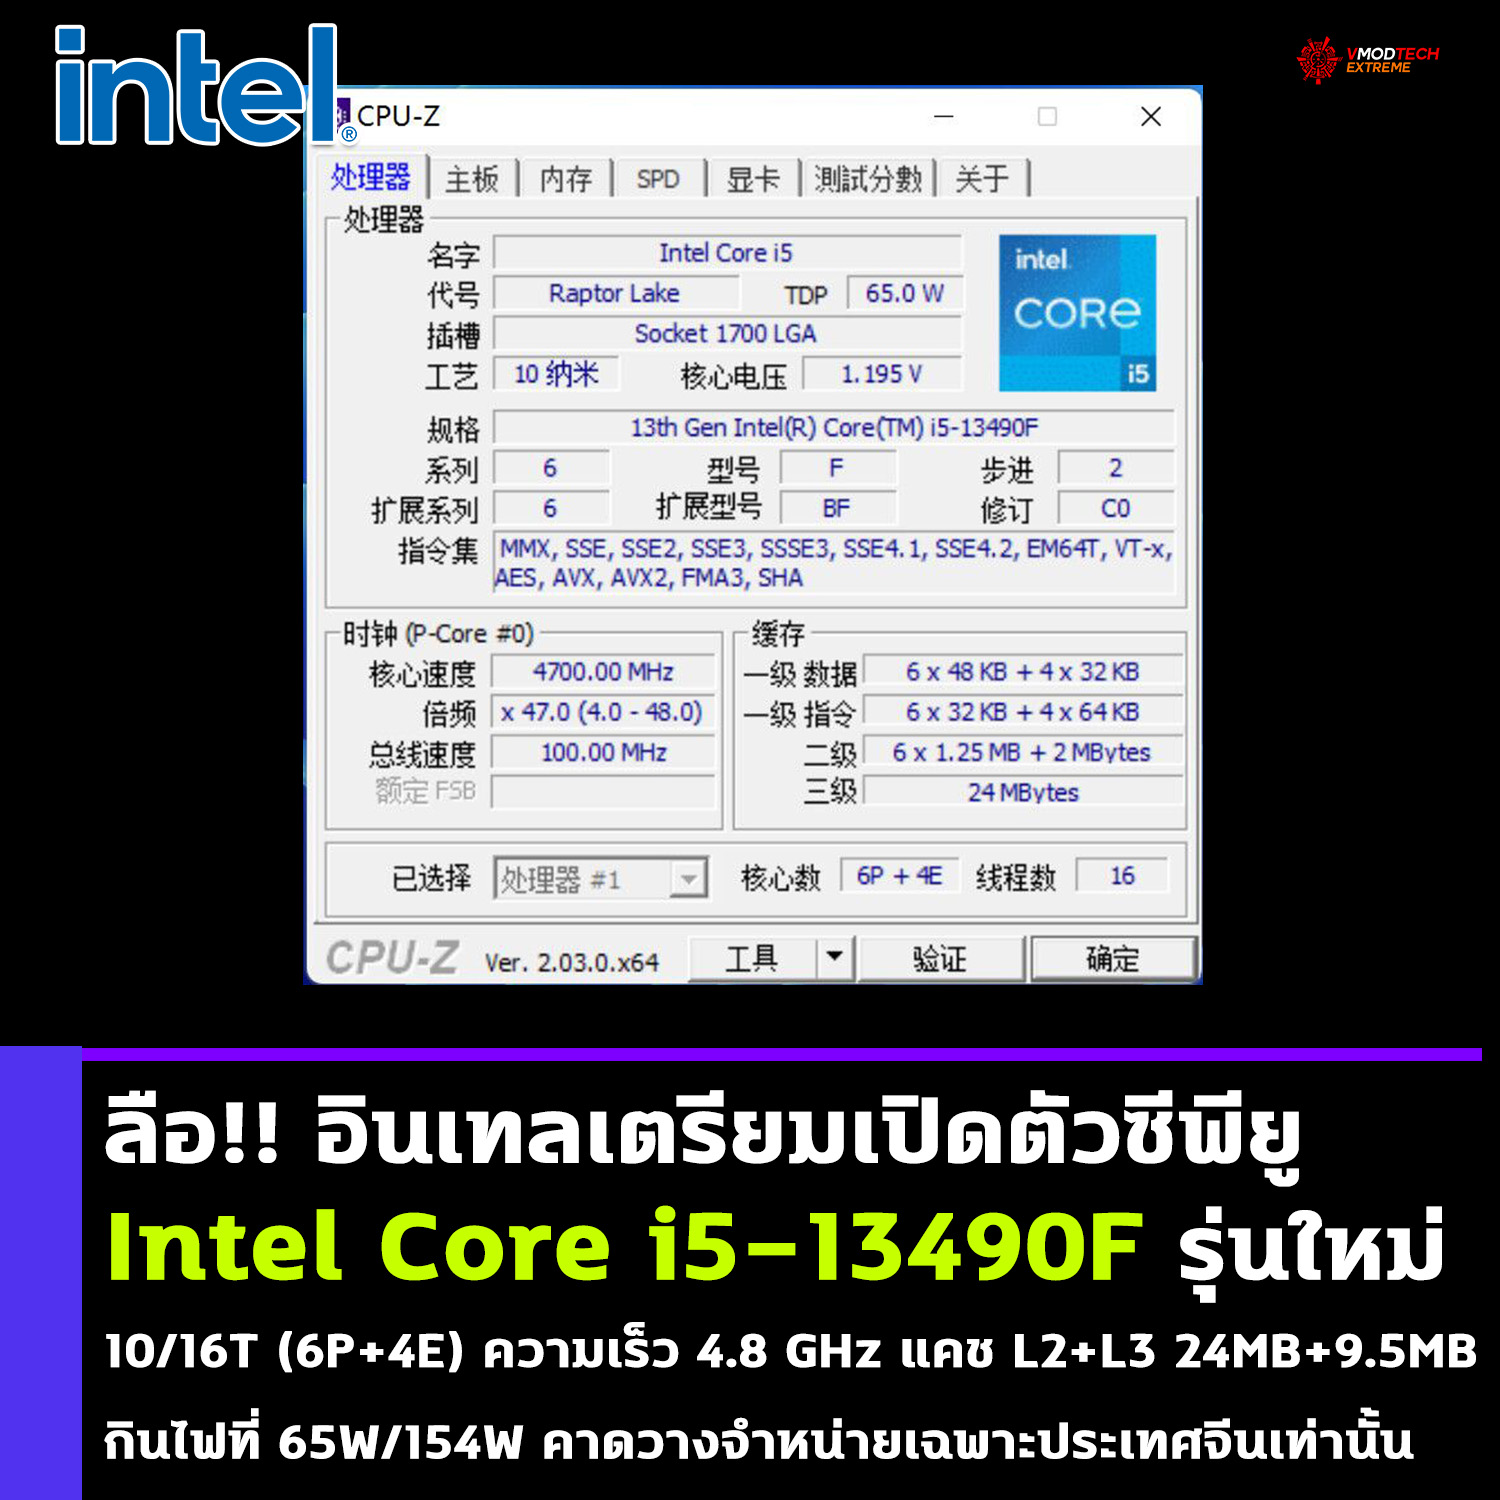 intel core i5 13490f ลือ!! อินเทลเตรียมเปิดตัวซีพียู Intel Core i5 13490F รุ่นใหม่ความเร็วสูงขึ้นและแคชที่มากขึ้น 